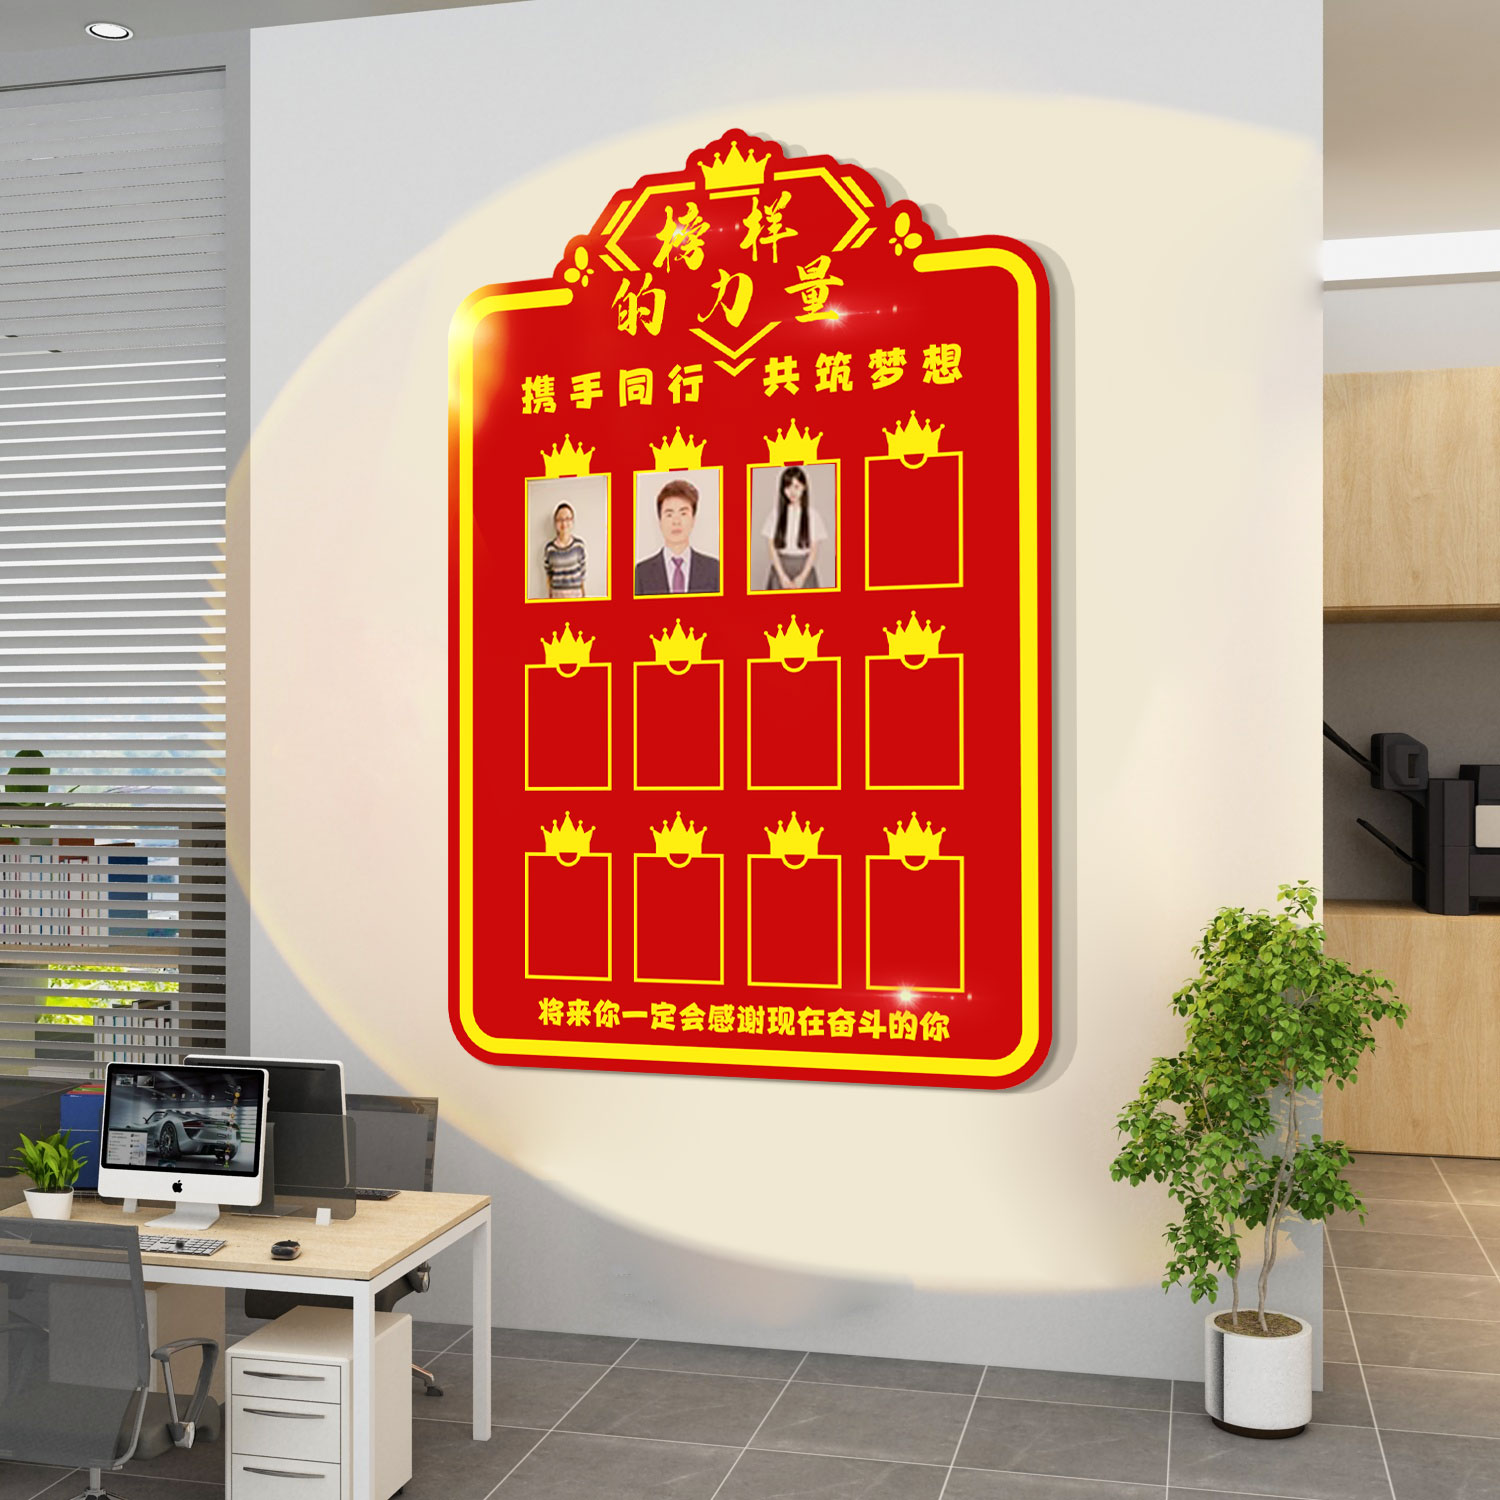 企业文化照片墙面装饰办公室员工风采光荣榜展示贴纸公司背景布置 - 图0